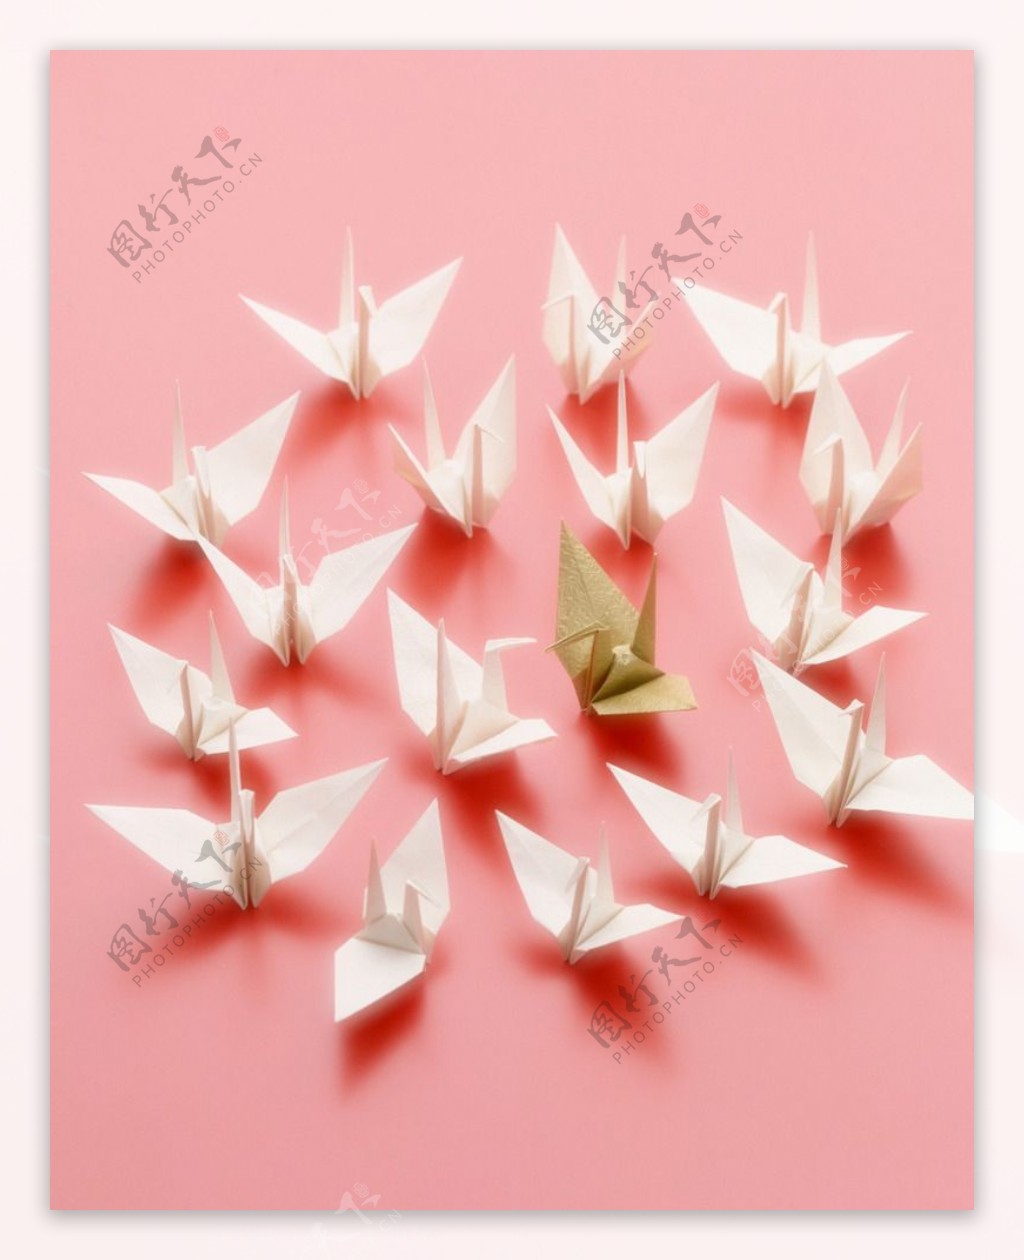 40,000+张最精彩的“千纸鹤”图片 · 100%免费下载 · Pexels素材图片